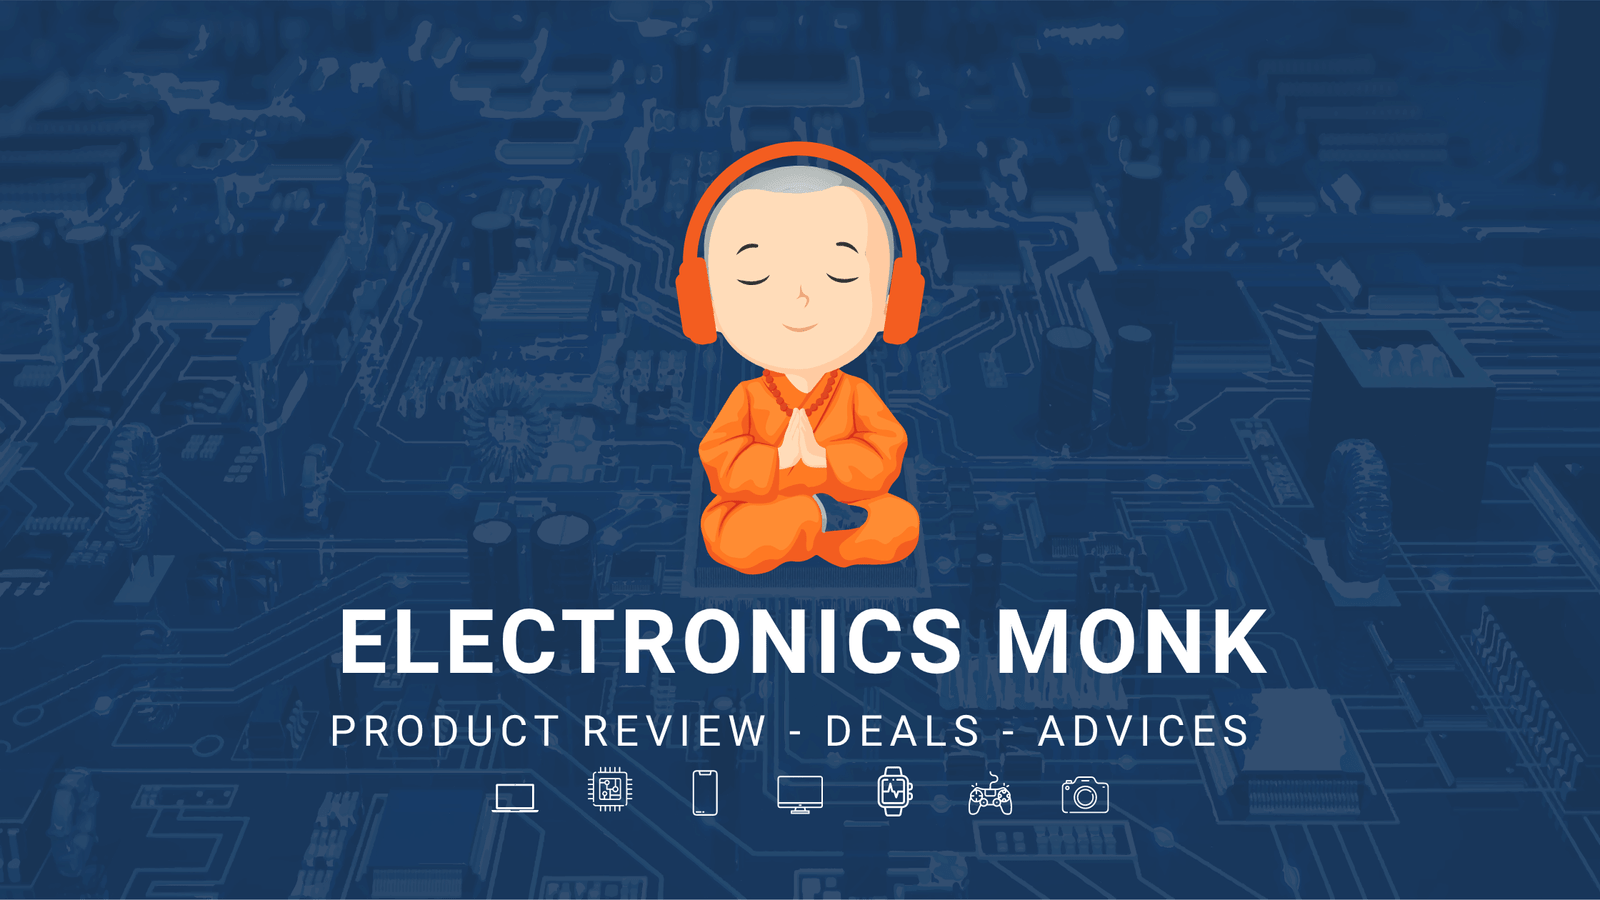 (c) Electronicsmonk.com